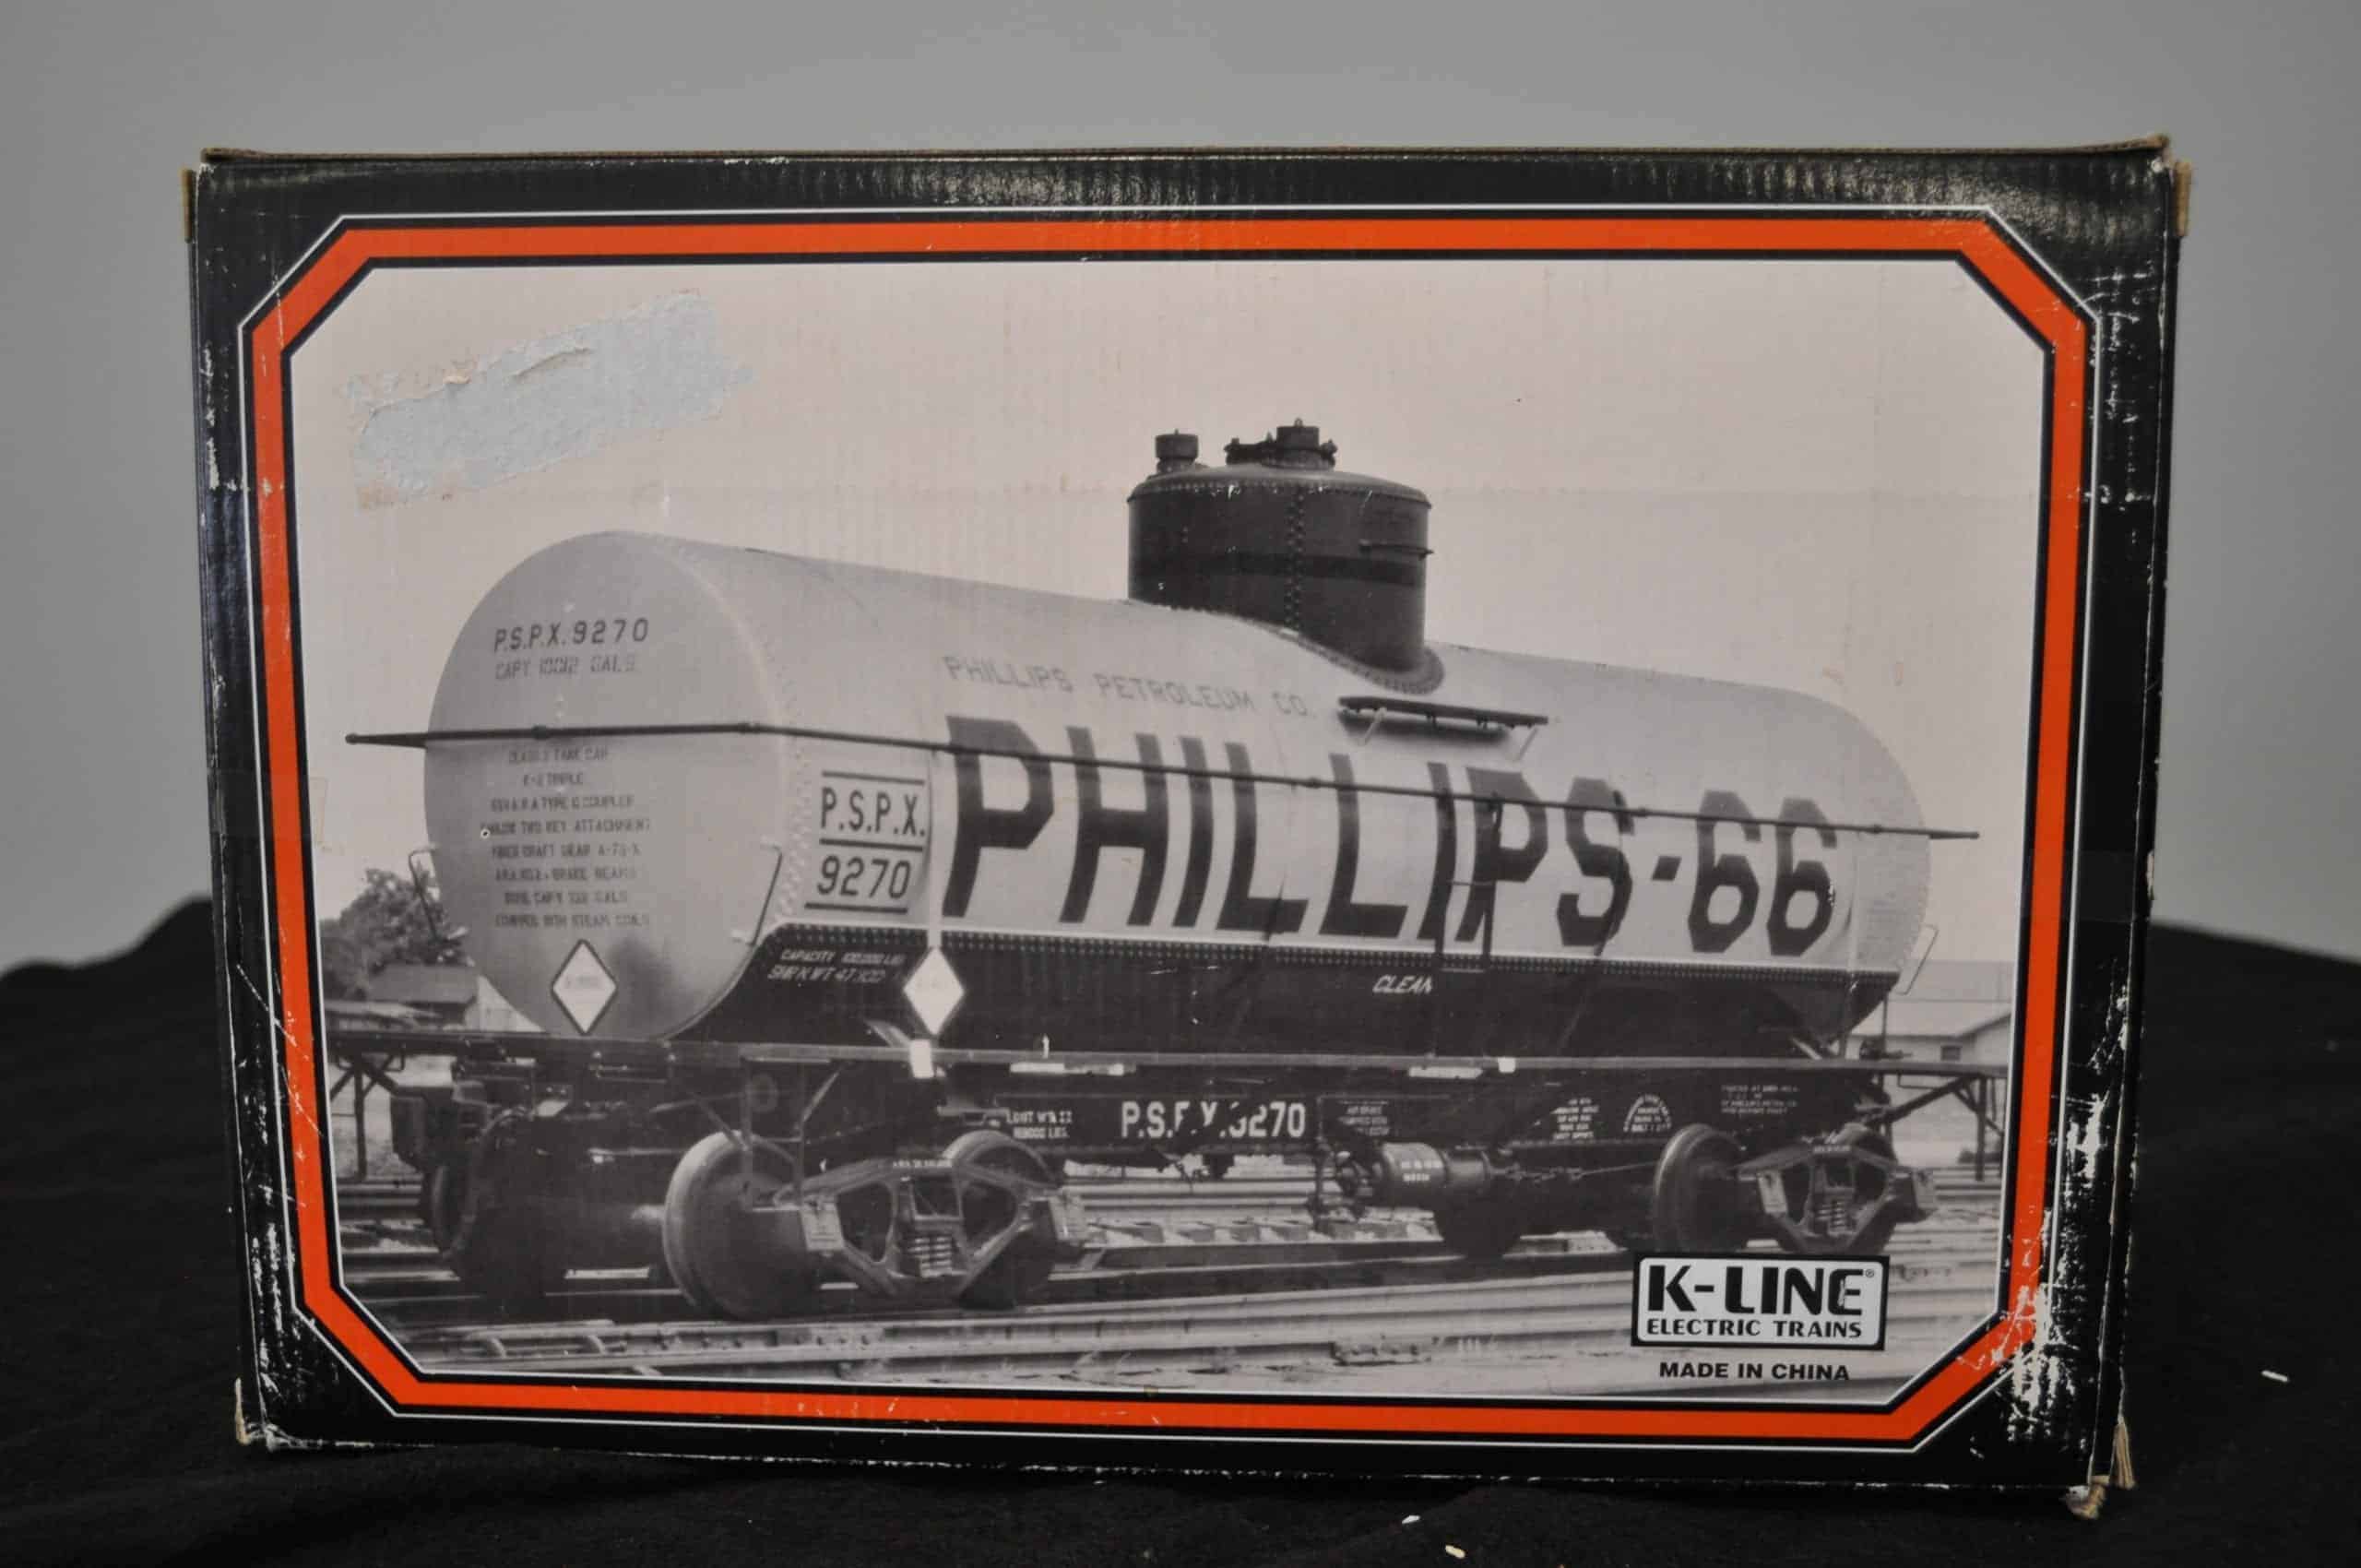 Philips 66 1930 Train Tank Car Bank